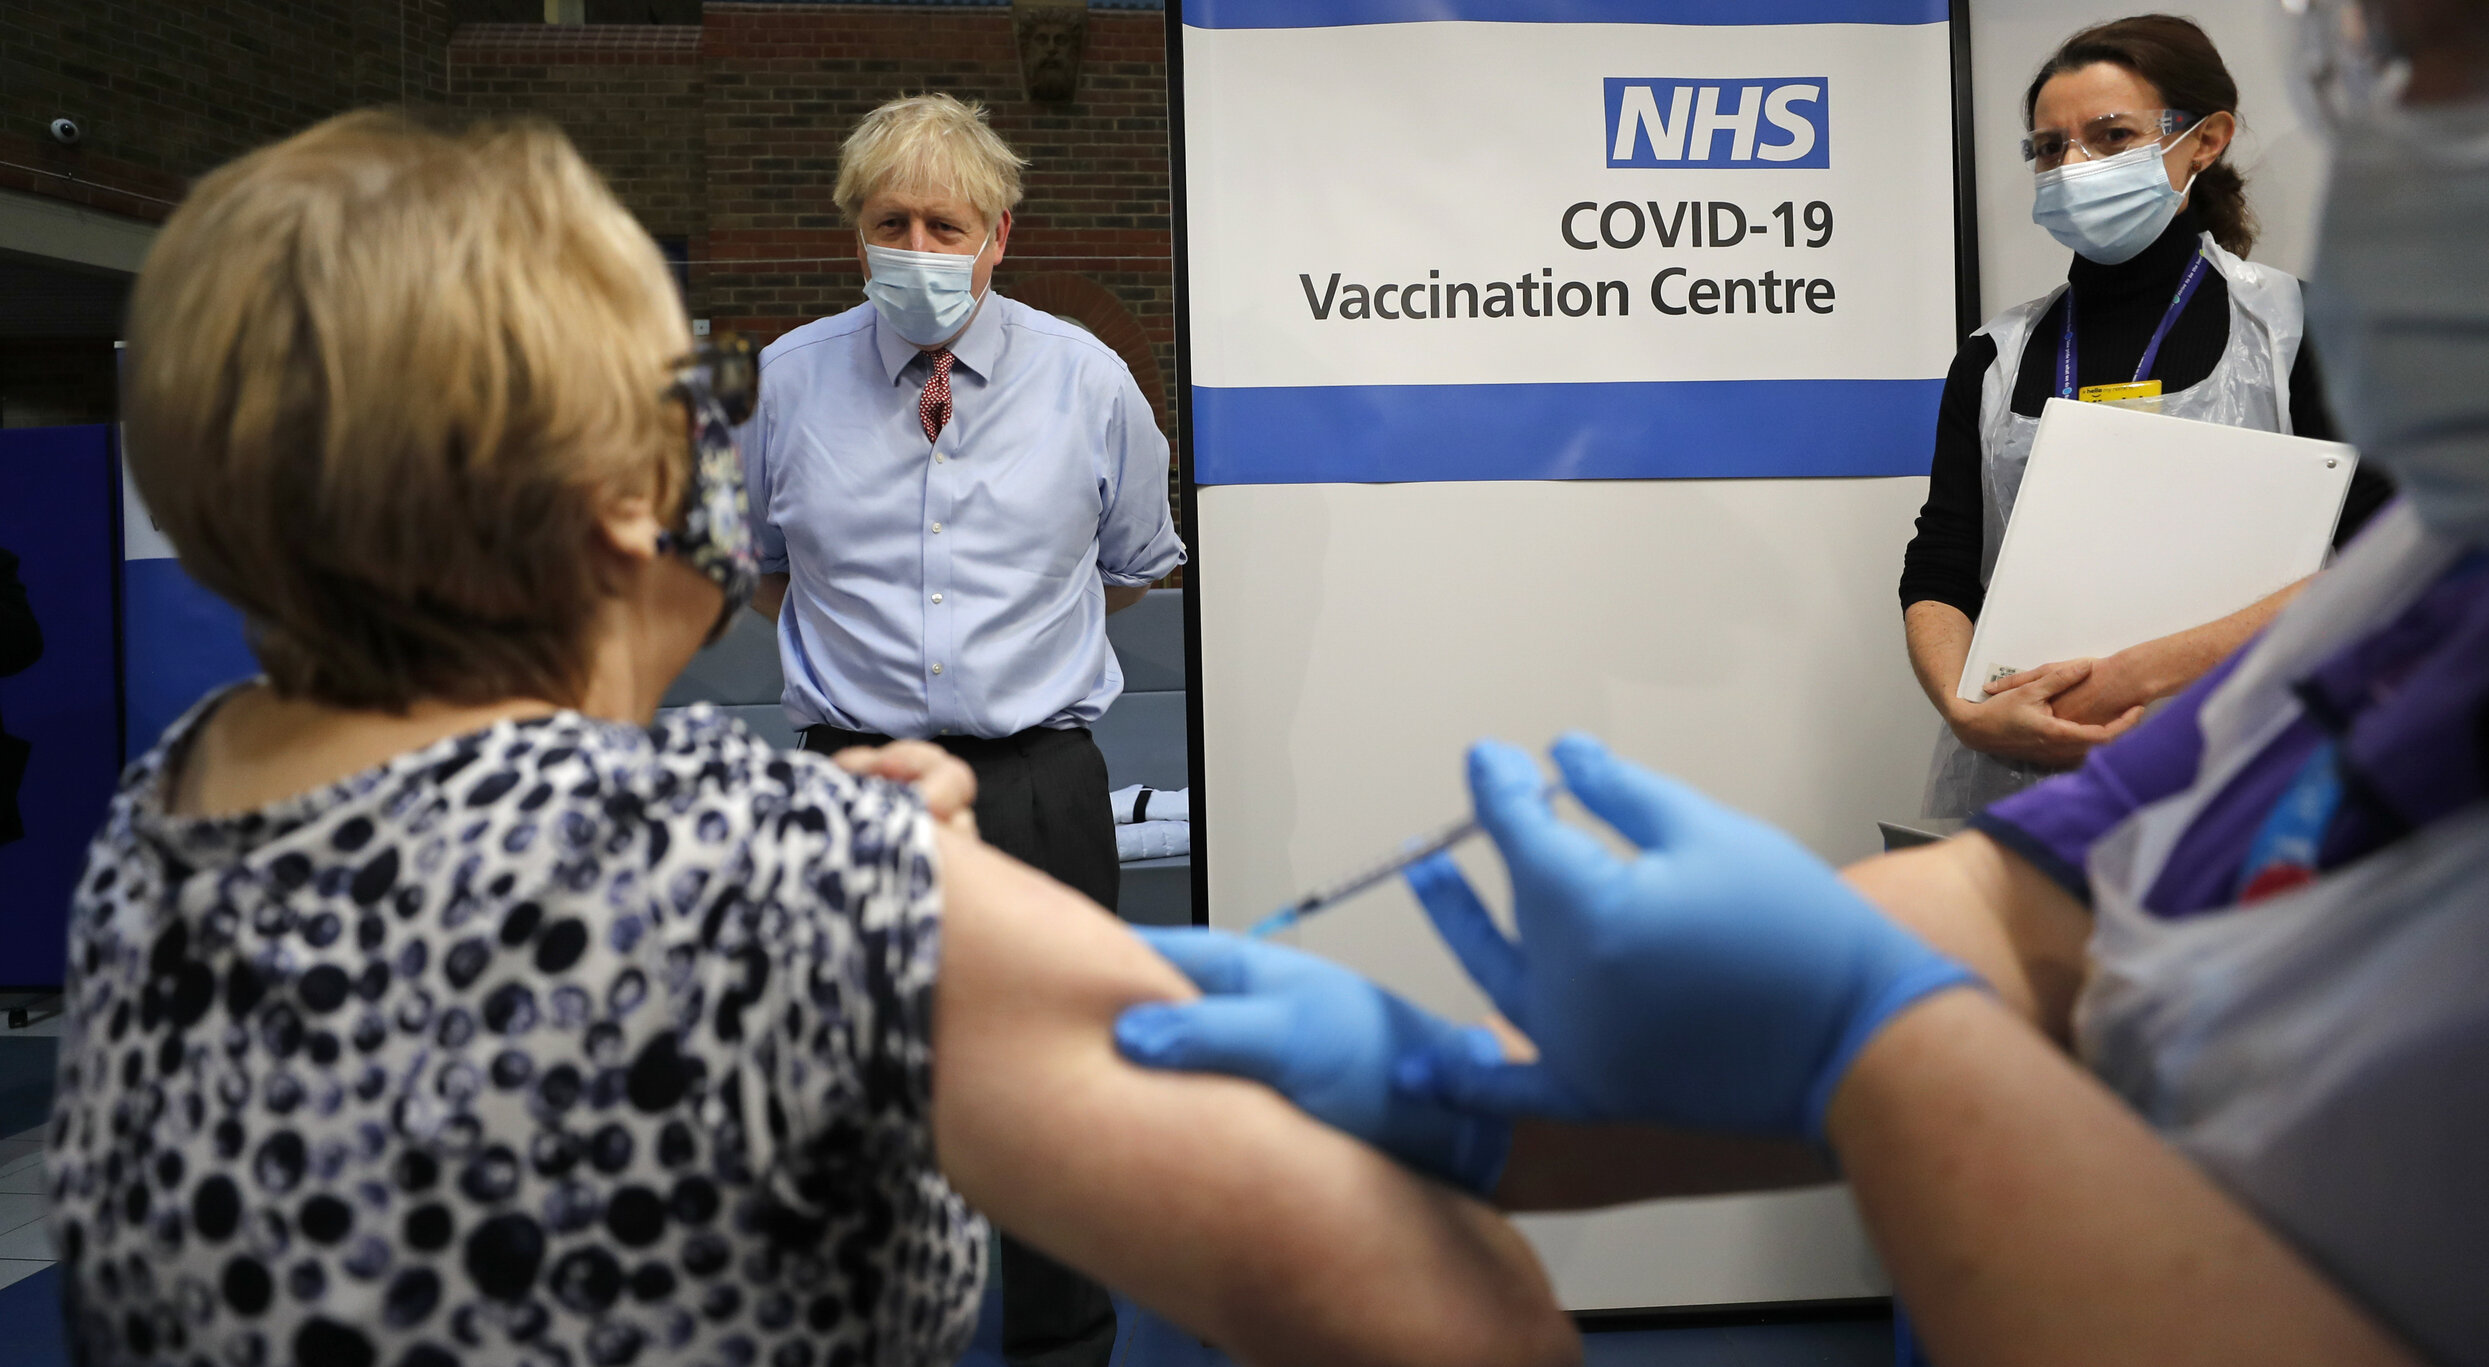 Marea Britanie administrează doza suplimentară a vaccinului anti-Covid la doar trei luni după a doua. Toți britanici cu vârste peste 18 ani devin eligibili